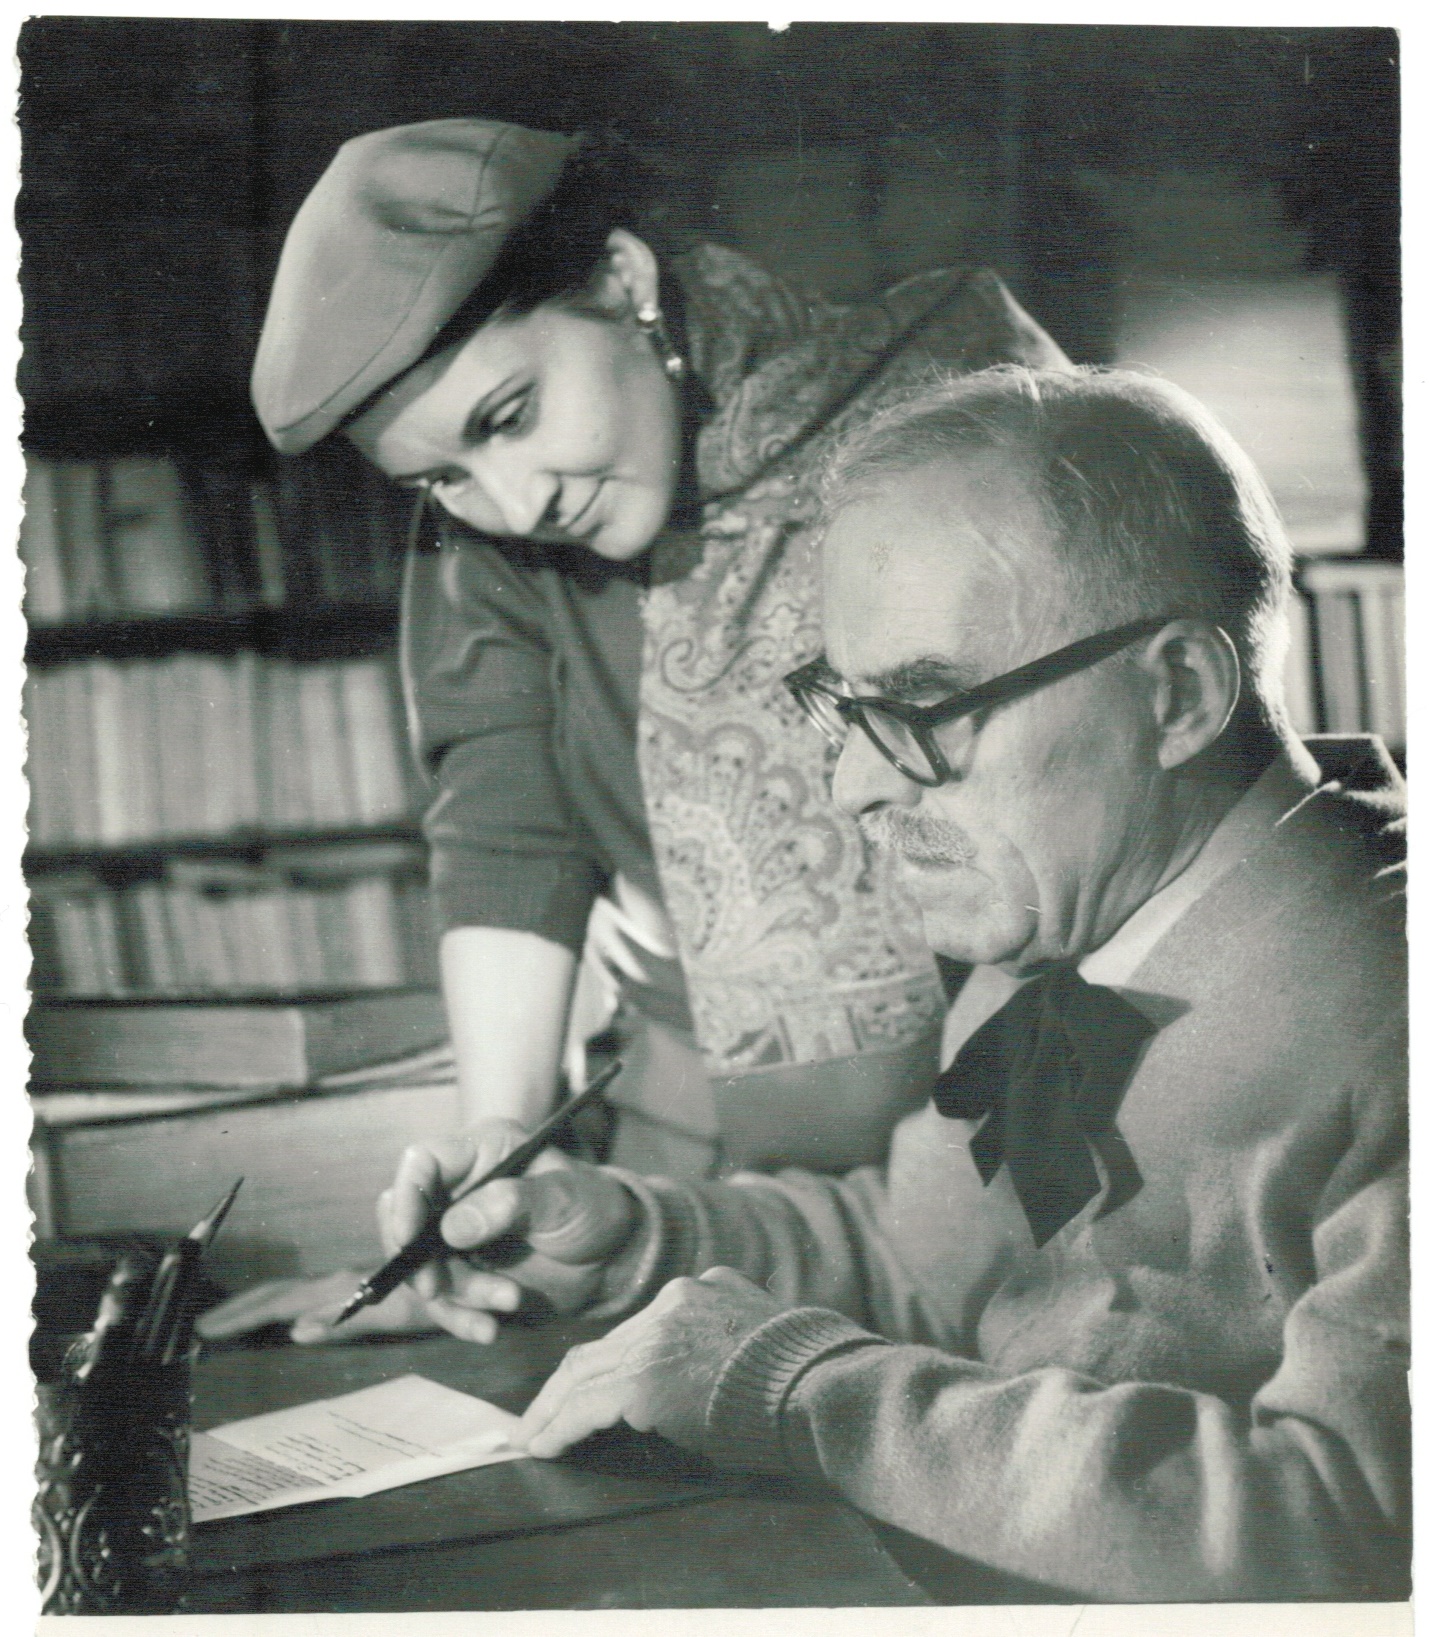 Mitzura Arghezi uitându-se la tatăl său, Tudor Arghezi, cum scria ceva